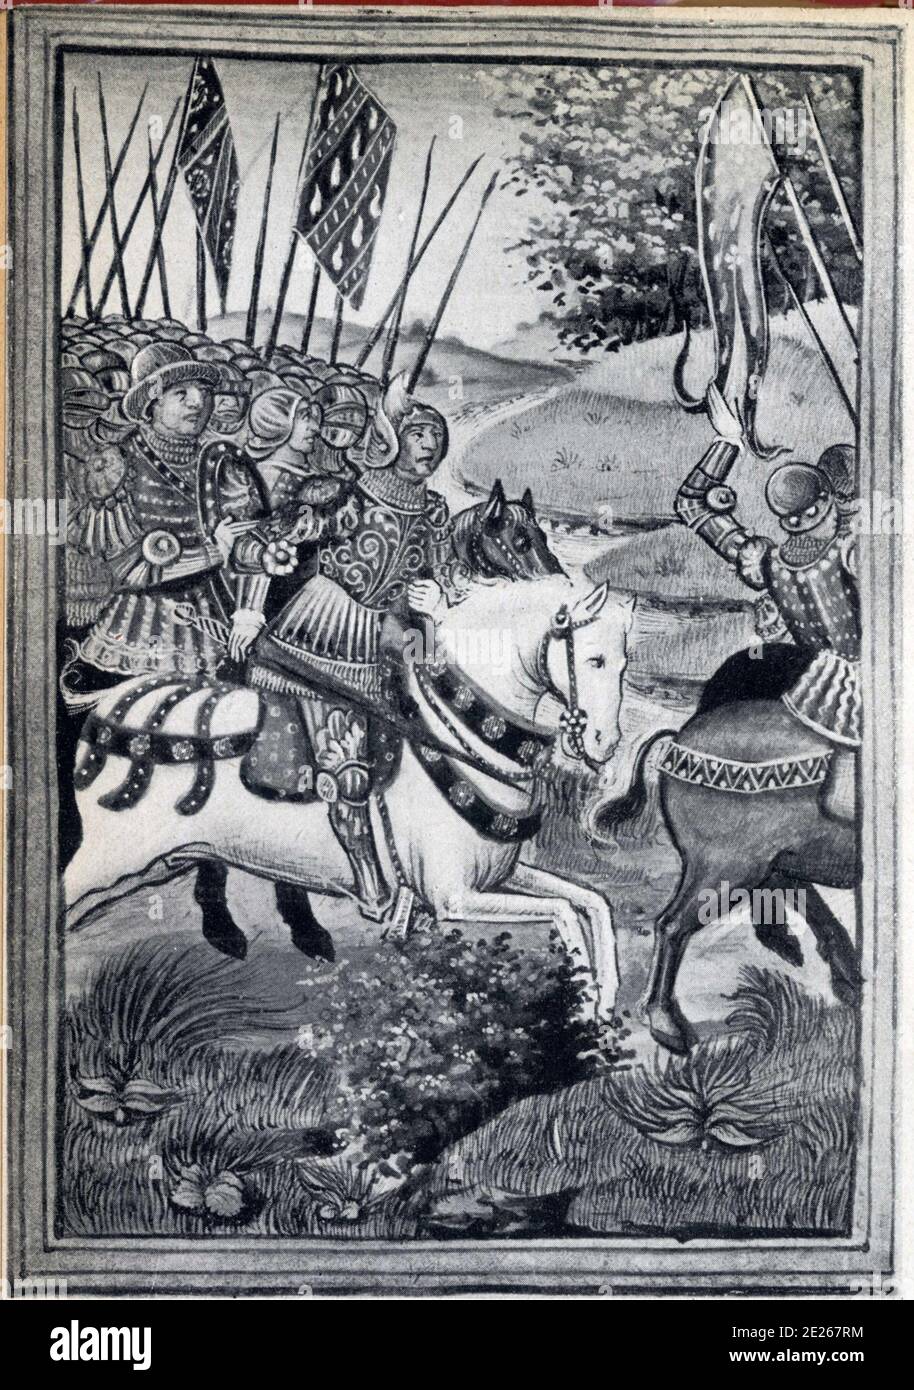 Comment La Hire et Xaintrailles vinrent courir et fourrager le pays du Duc de Bourgogne.Chronique d'Enguerrand de Monstrelet. Stock Photo